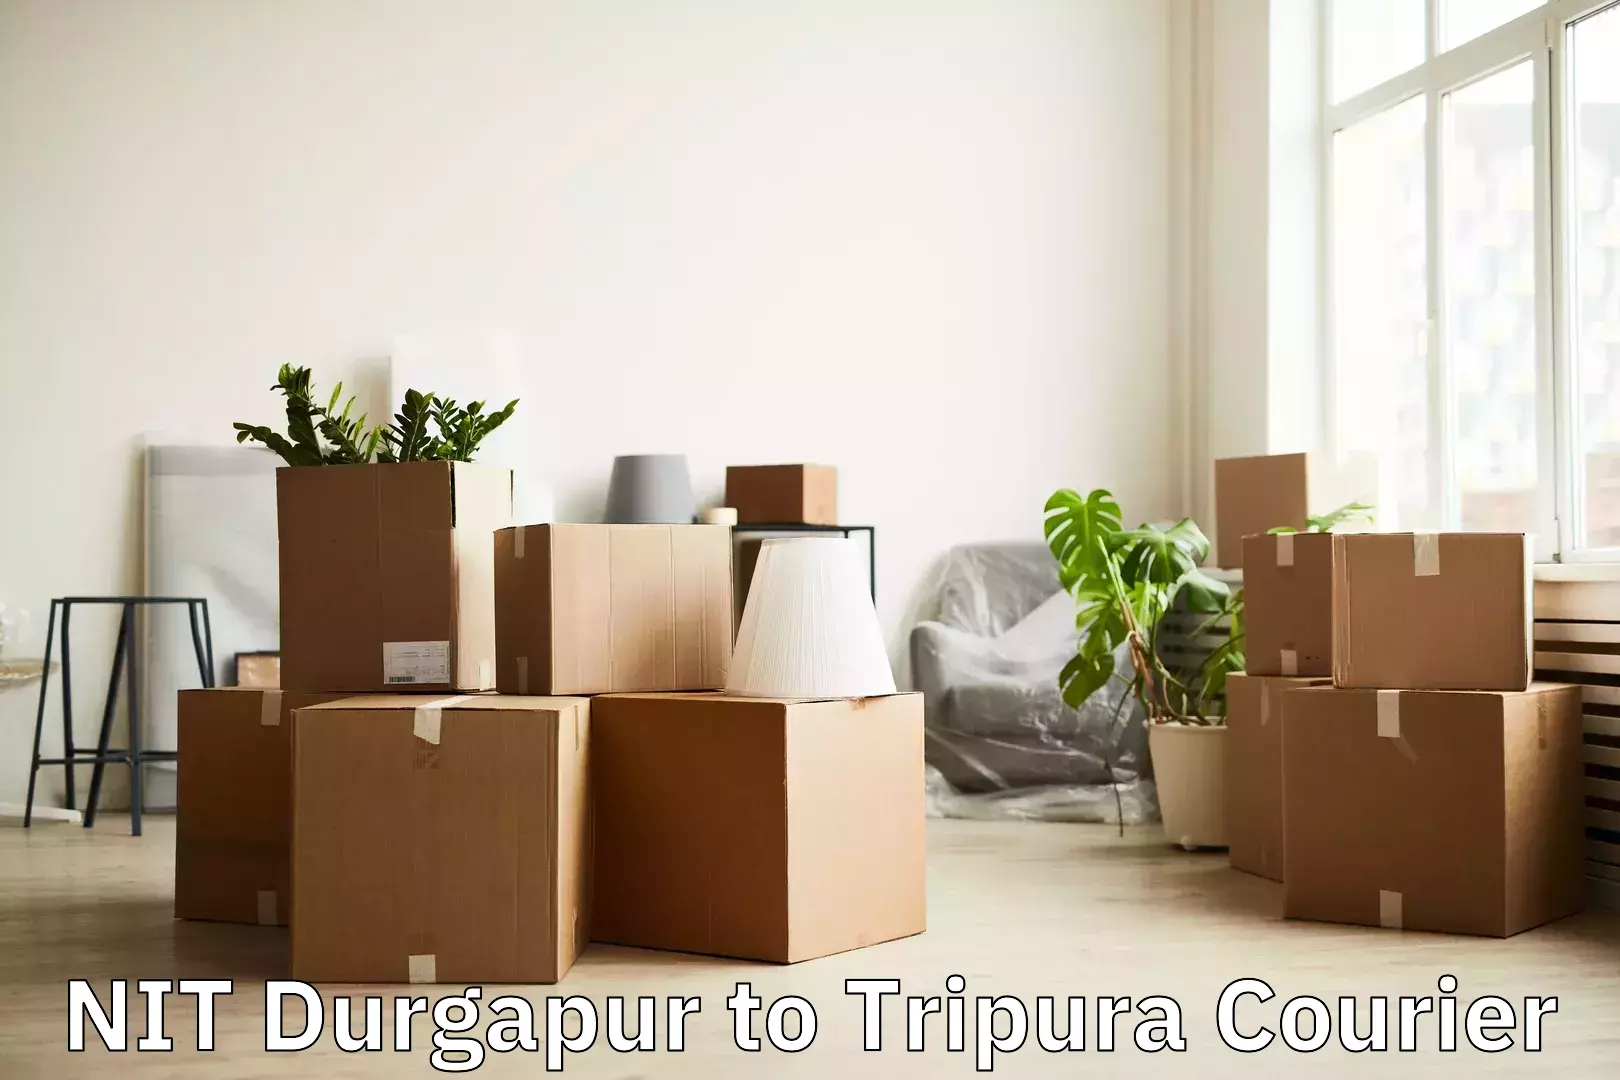 Luggage shipment tracking NIT Durgapur to Udaipur Tripura